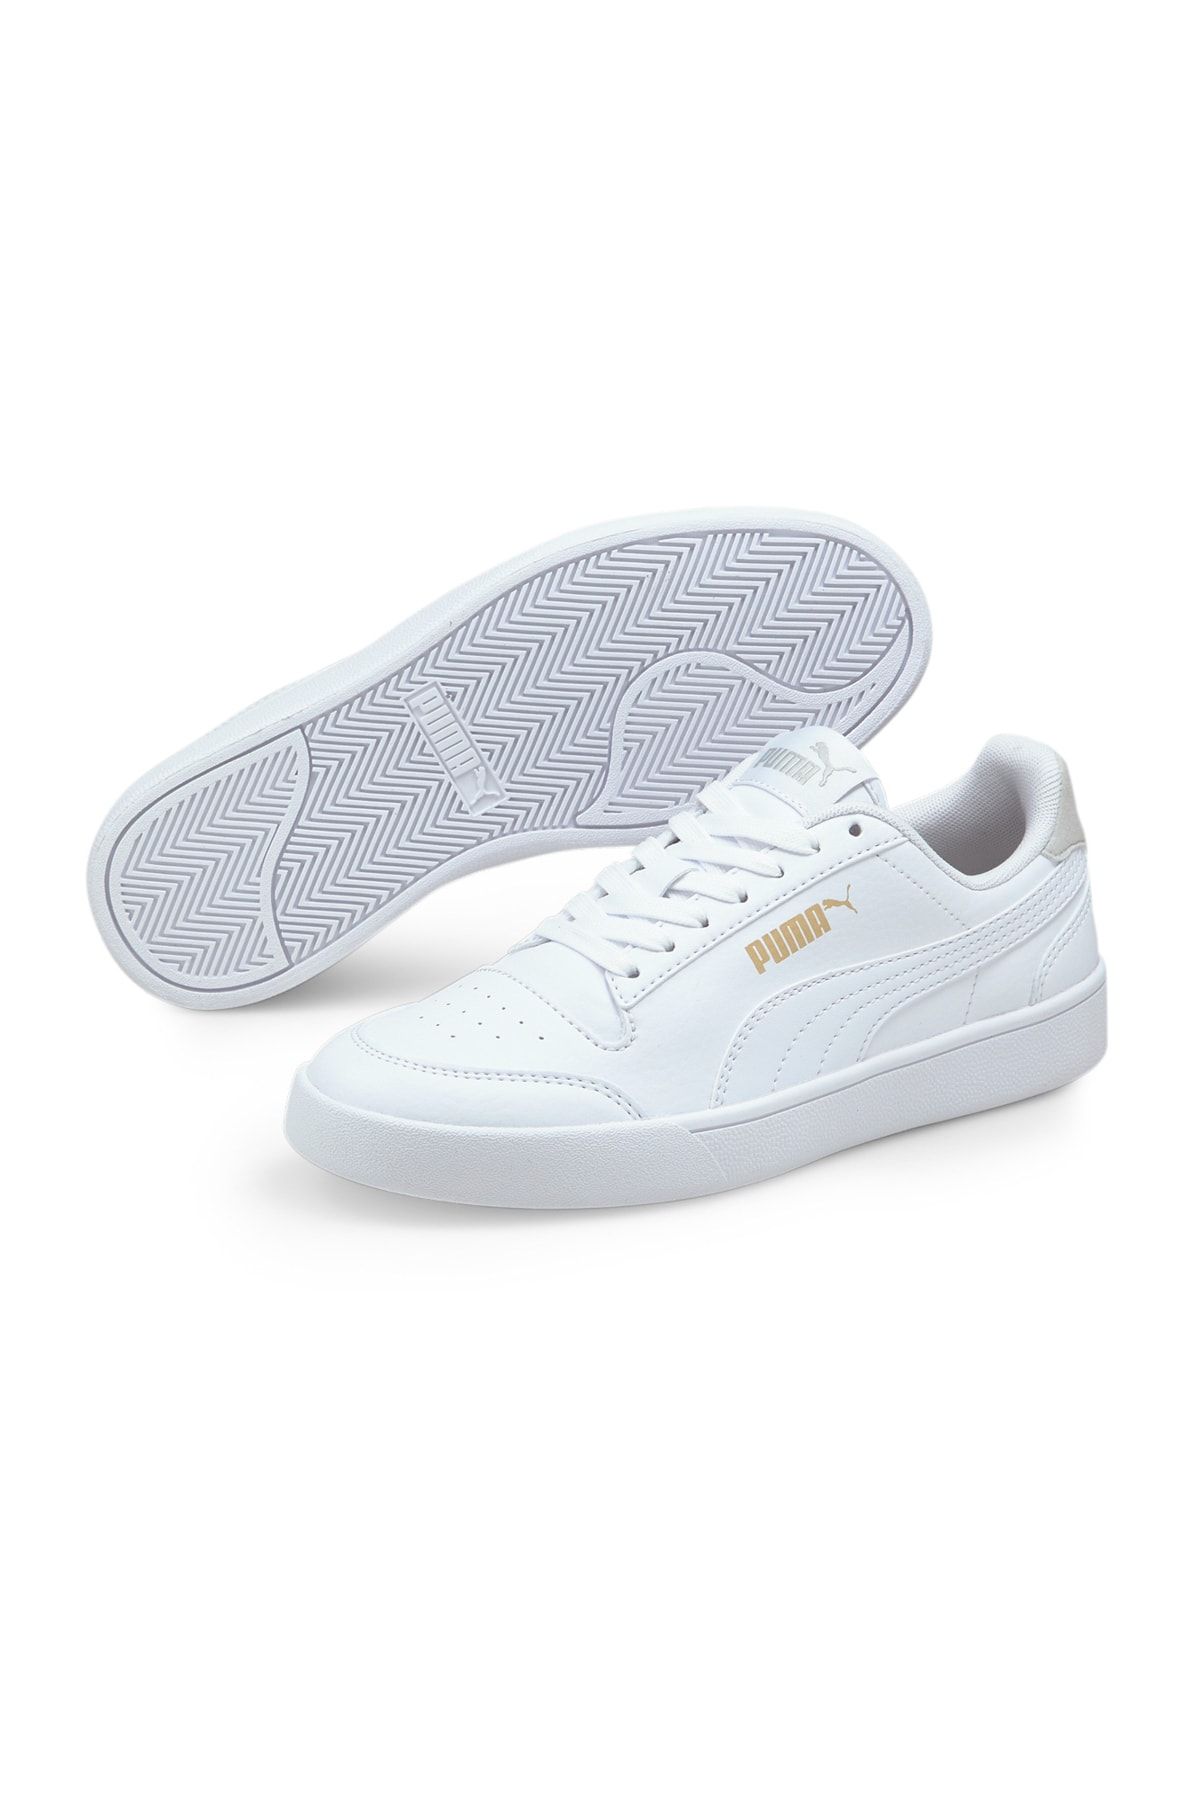 Puma Shuffle Jr Beyaz Günlük Ayakkabı - 37568801